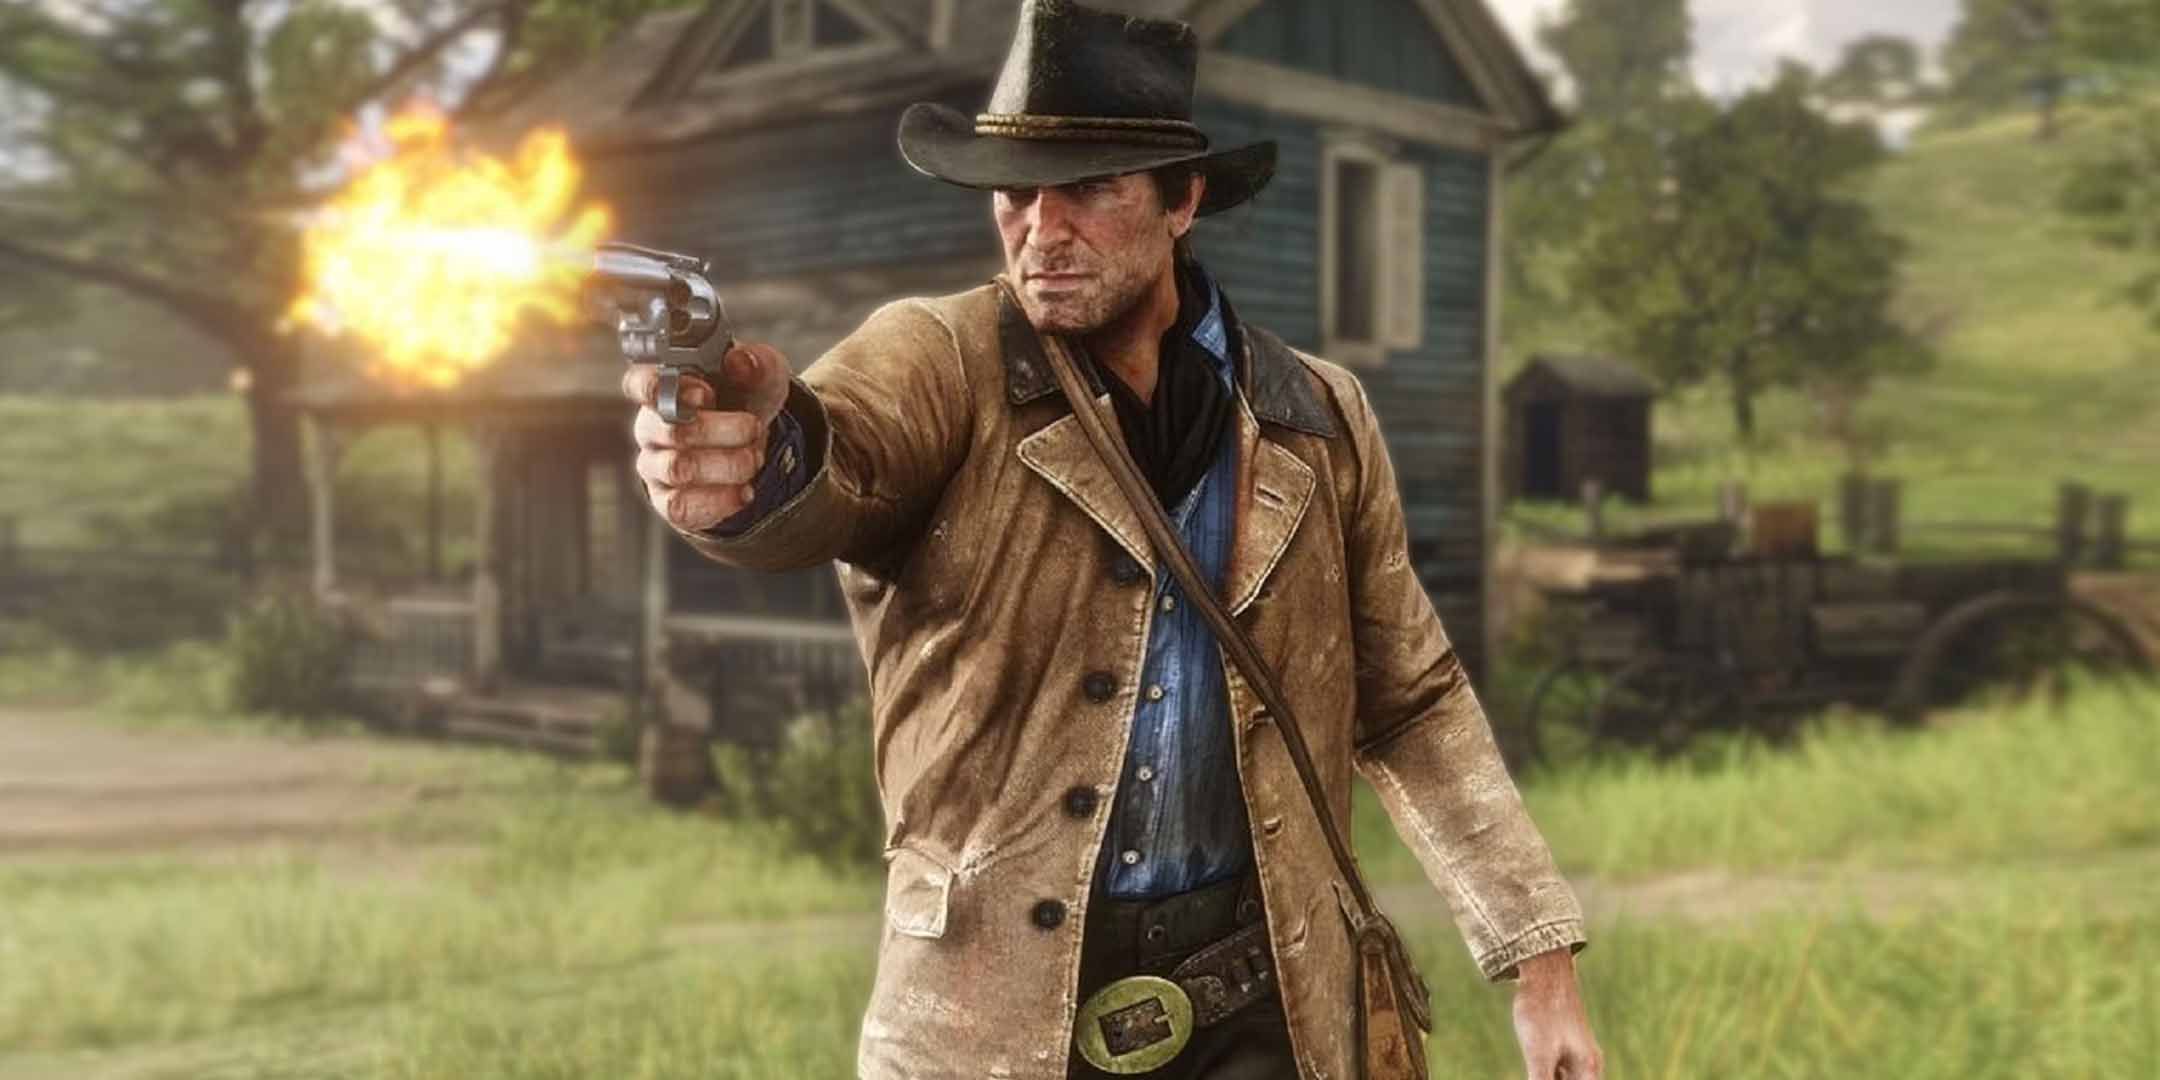 Arthur Morgan from Red Dead Redemption 2 firing a pistol